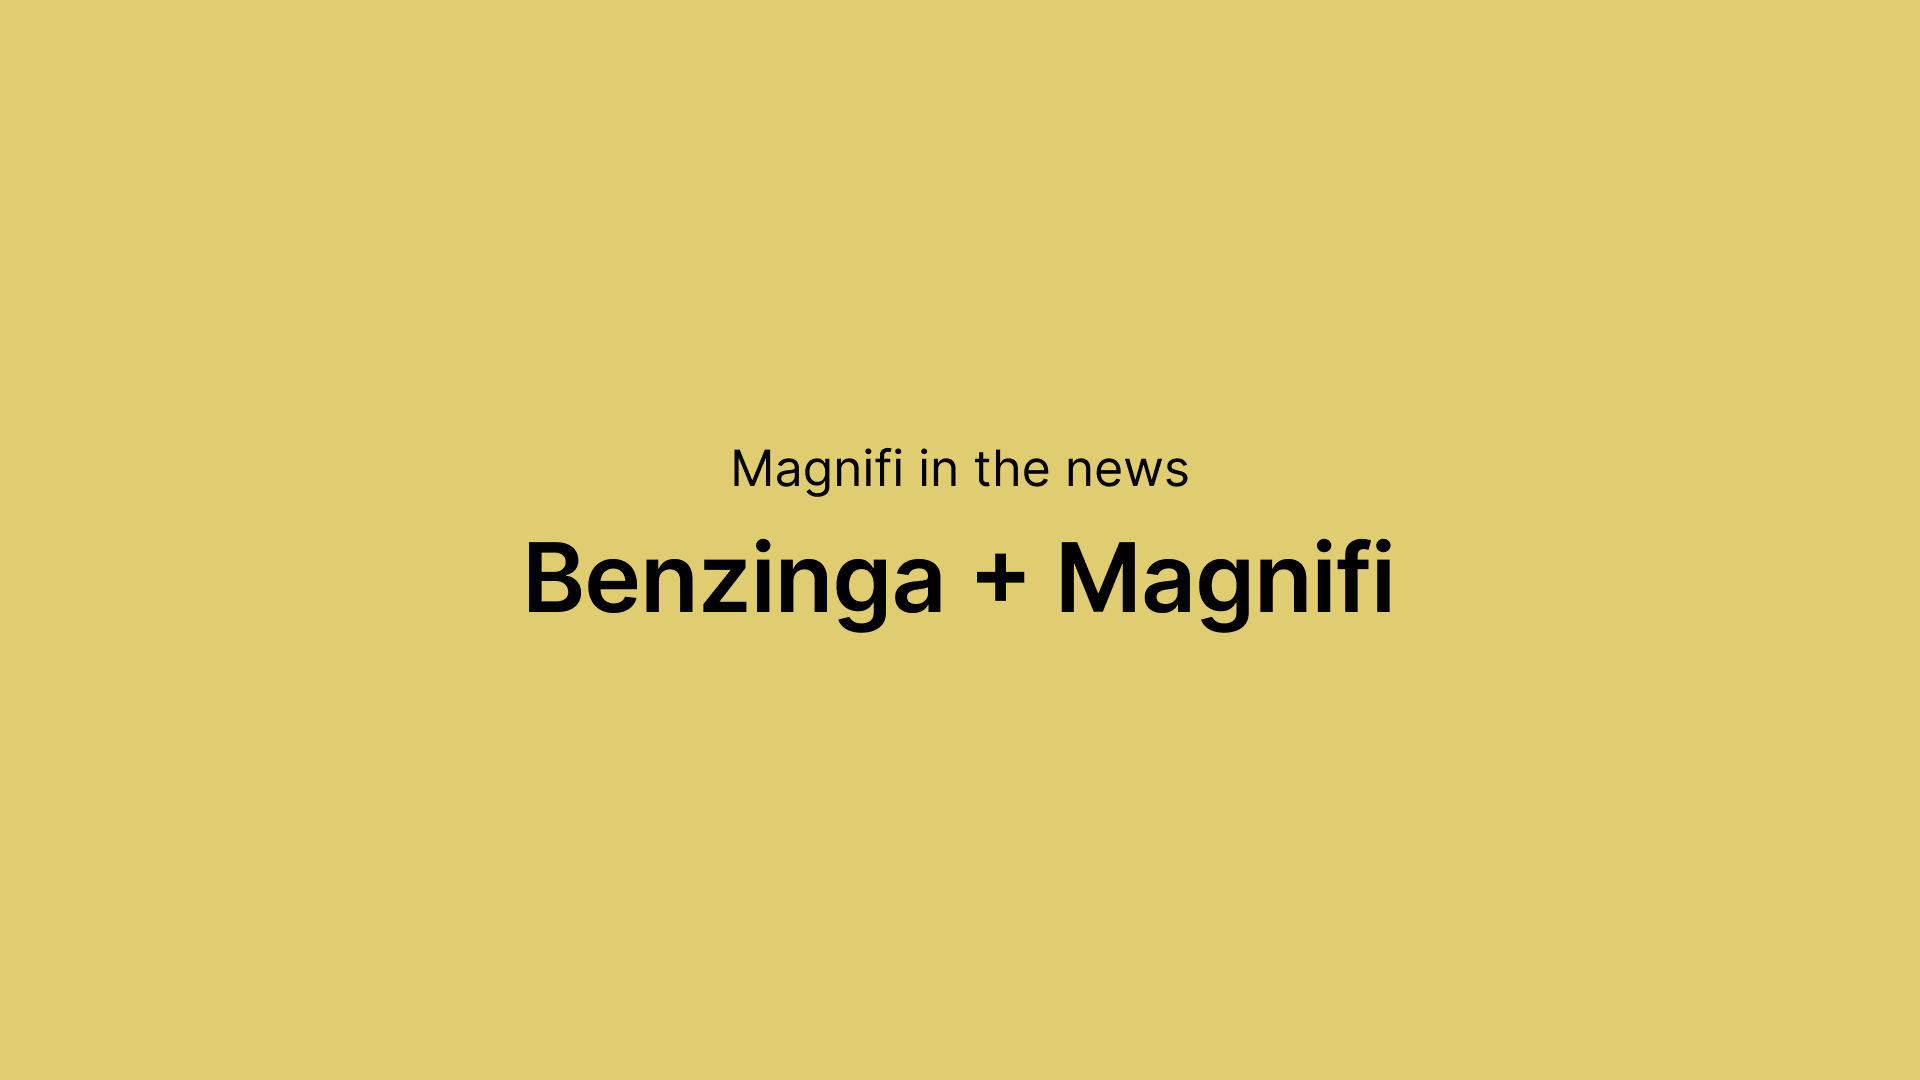 Magnifi in the news
Benzinga + Magnifi